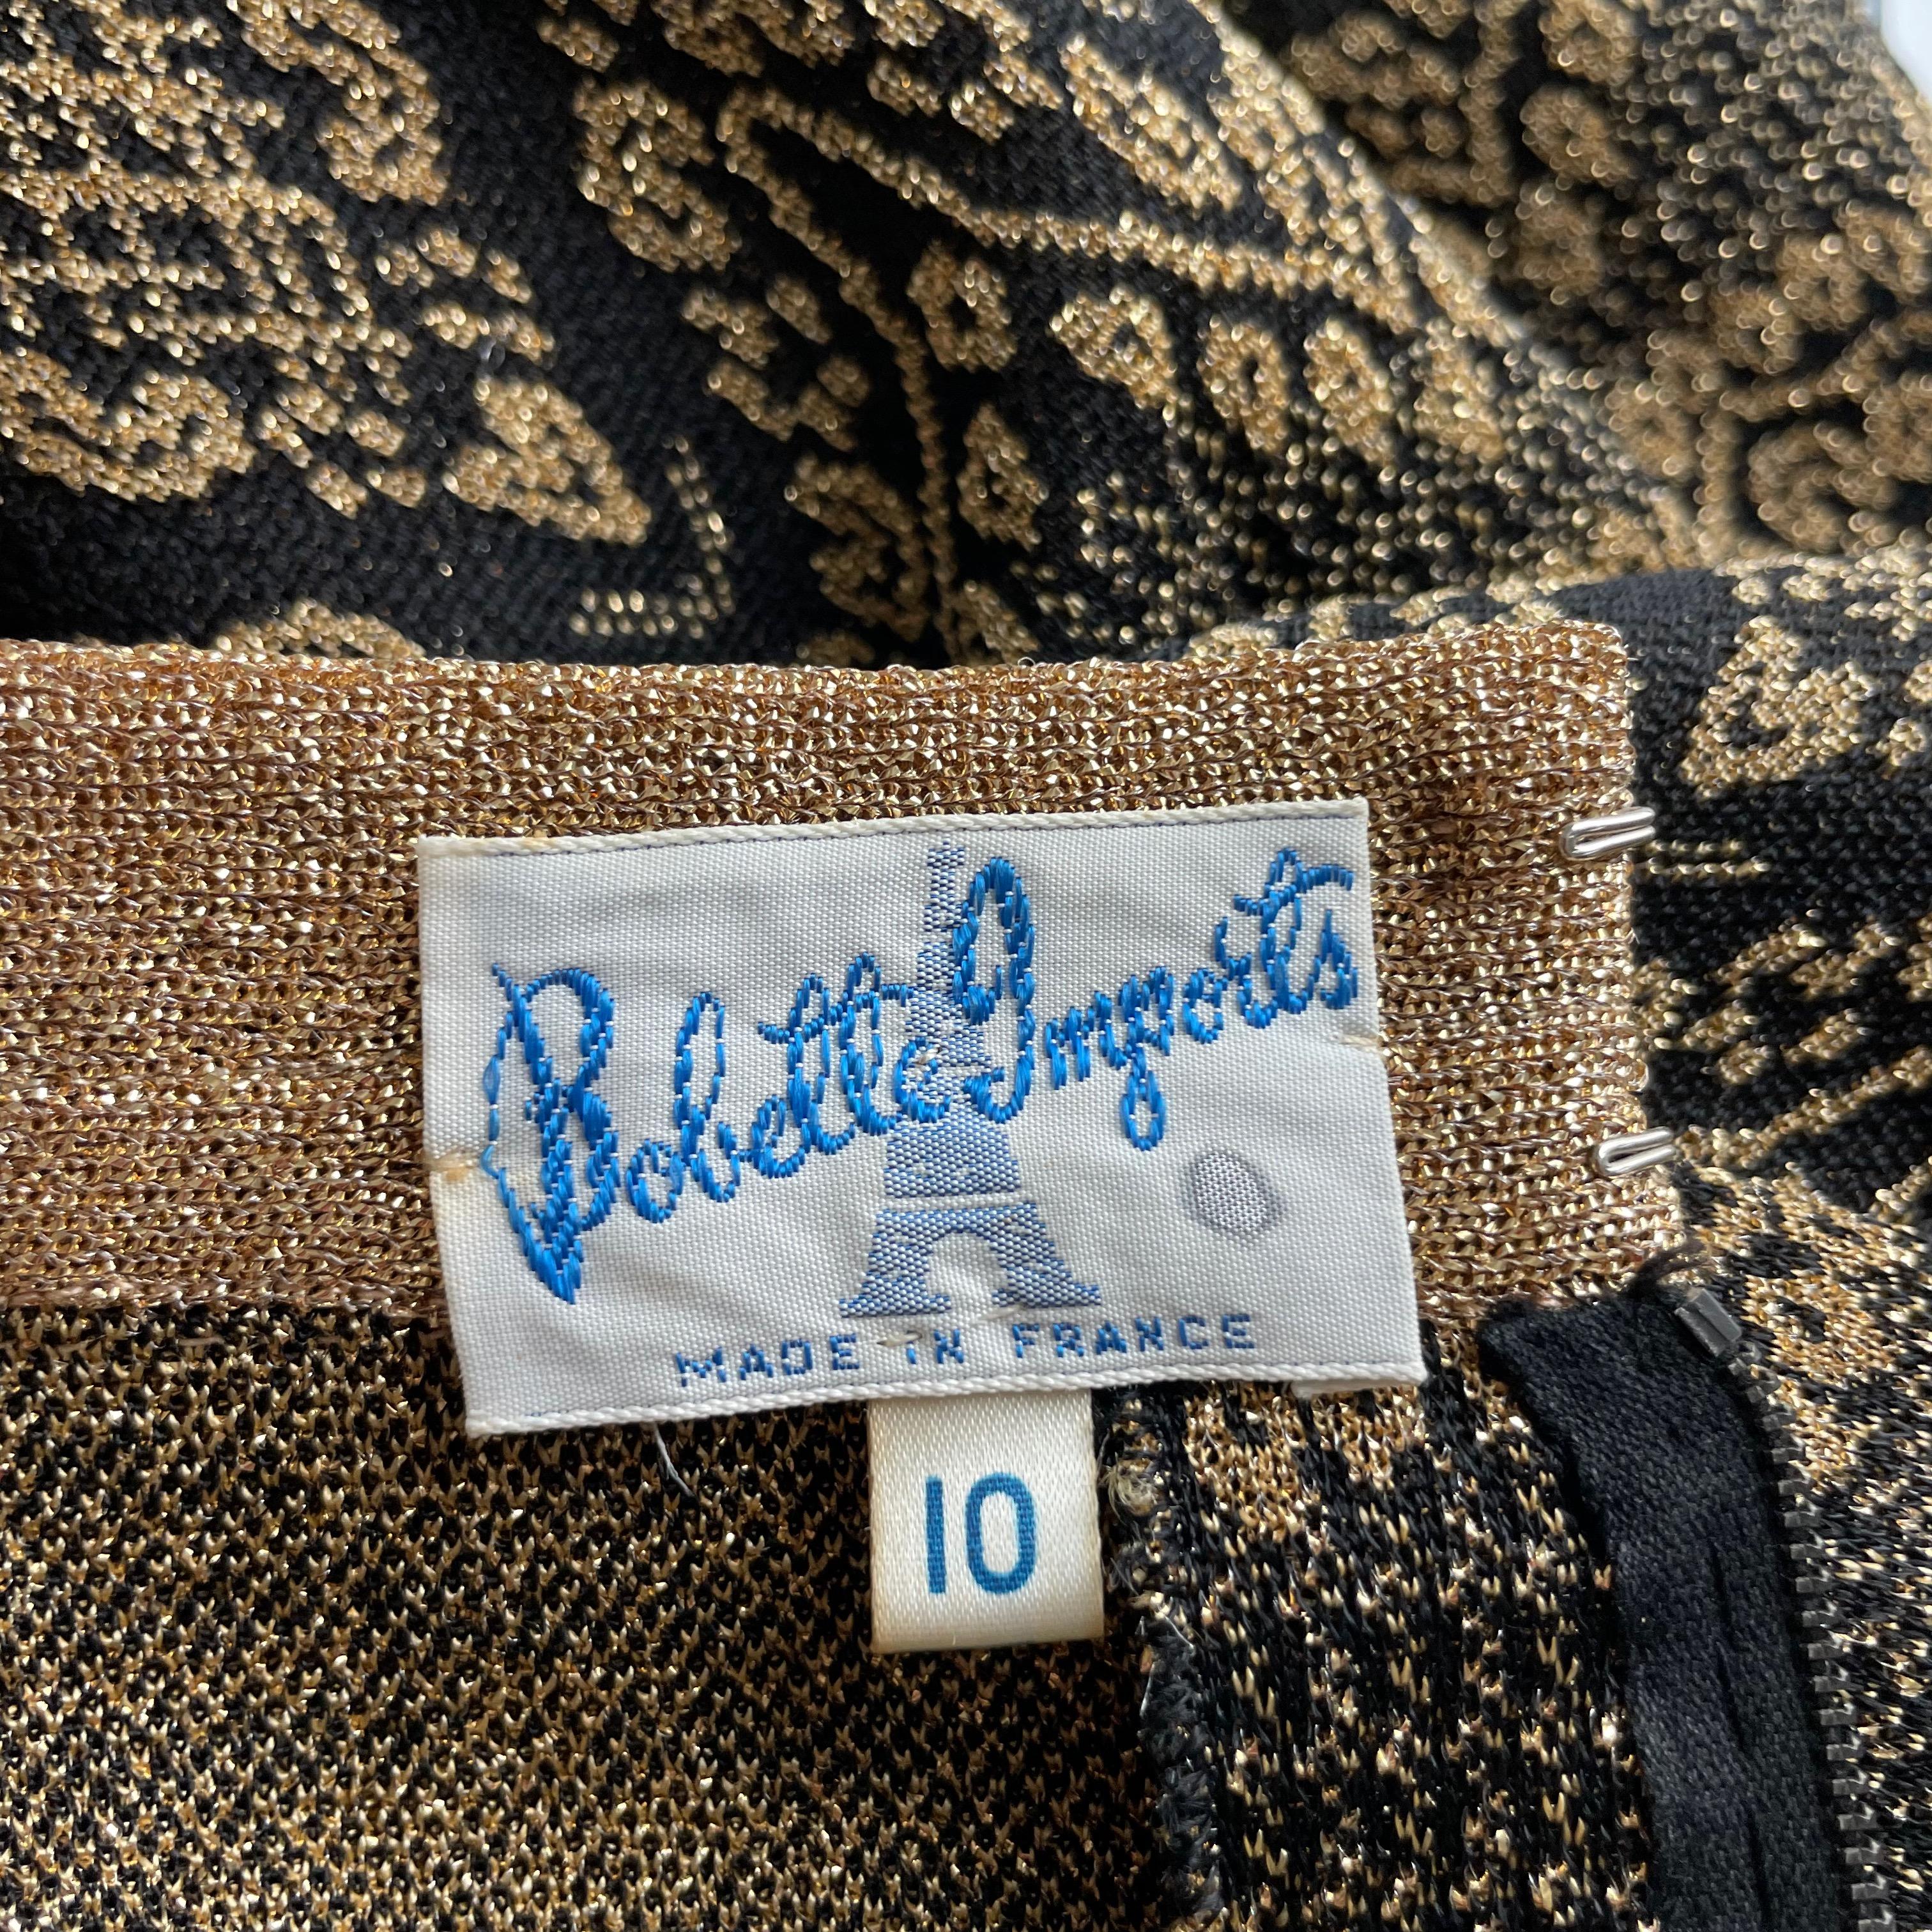 Vintage Dress Knit Bobette Imports France Black Gold Lurex Tricot Long Sleeve 10 For Sale 1